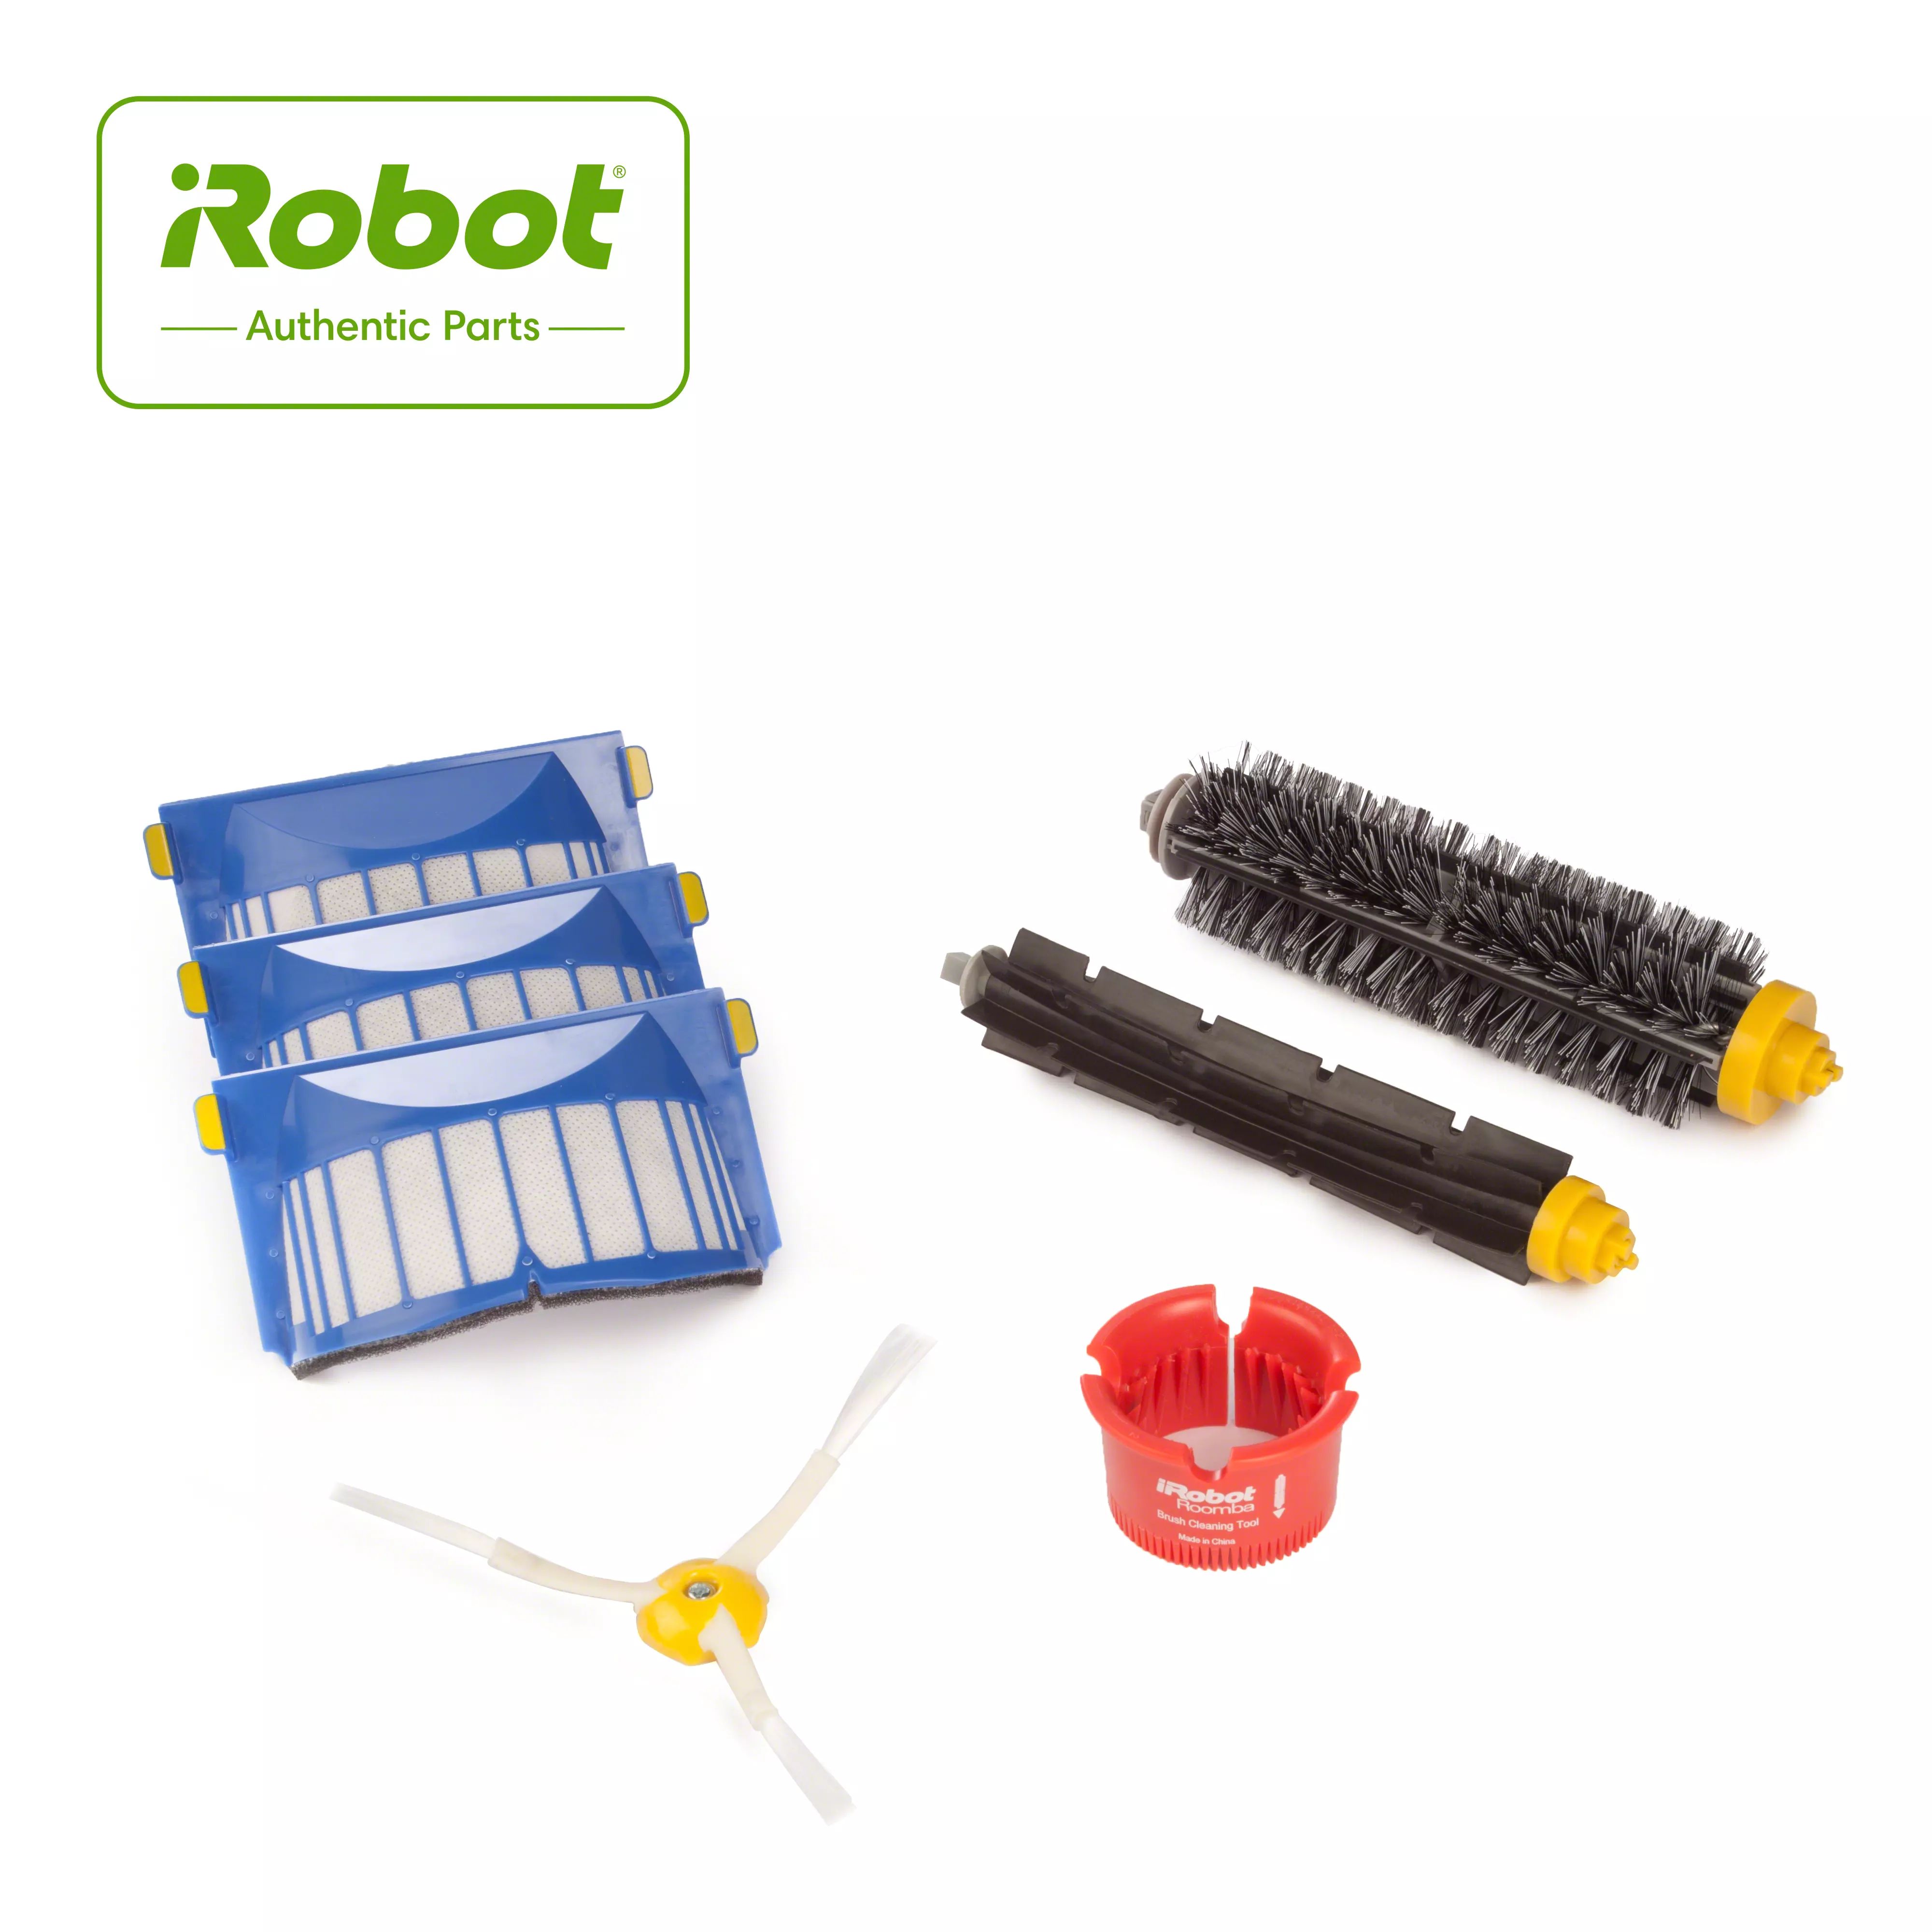 Ensemble brosse et filtre pour iRobot Roomba série 600